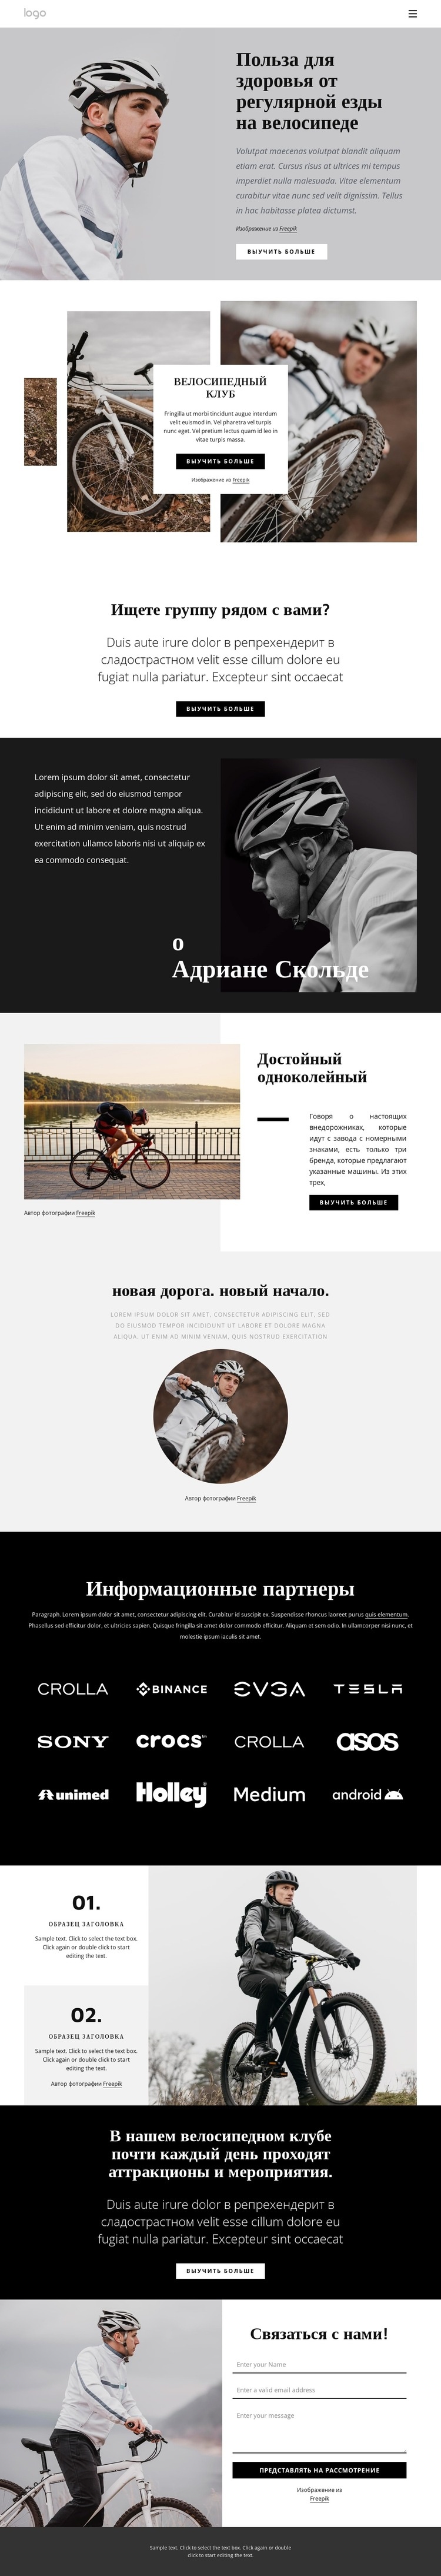 Преимущества регулярной езды на велосипеде Мокап веб-сайта